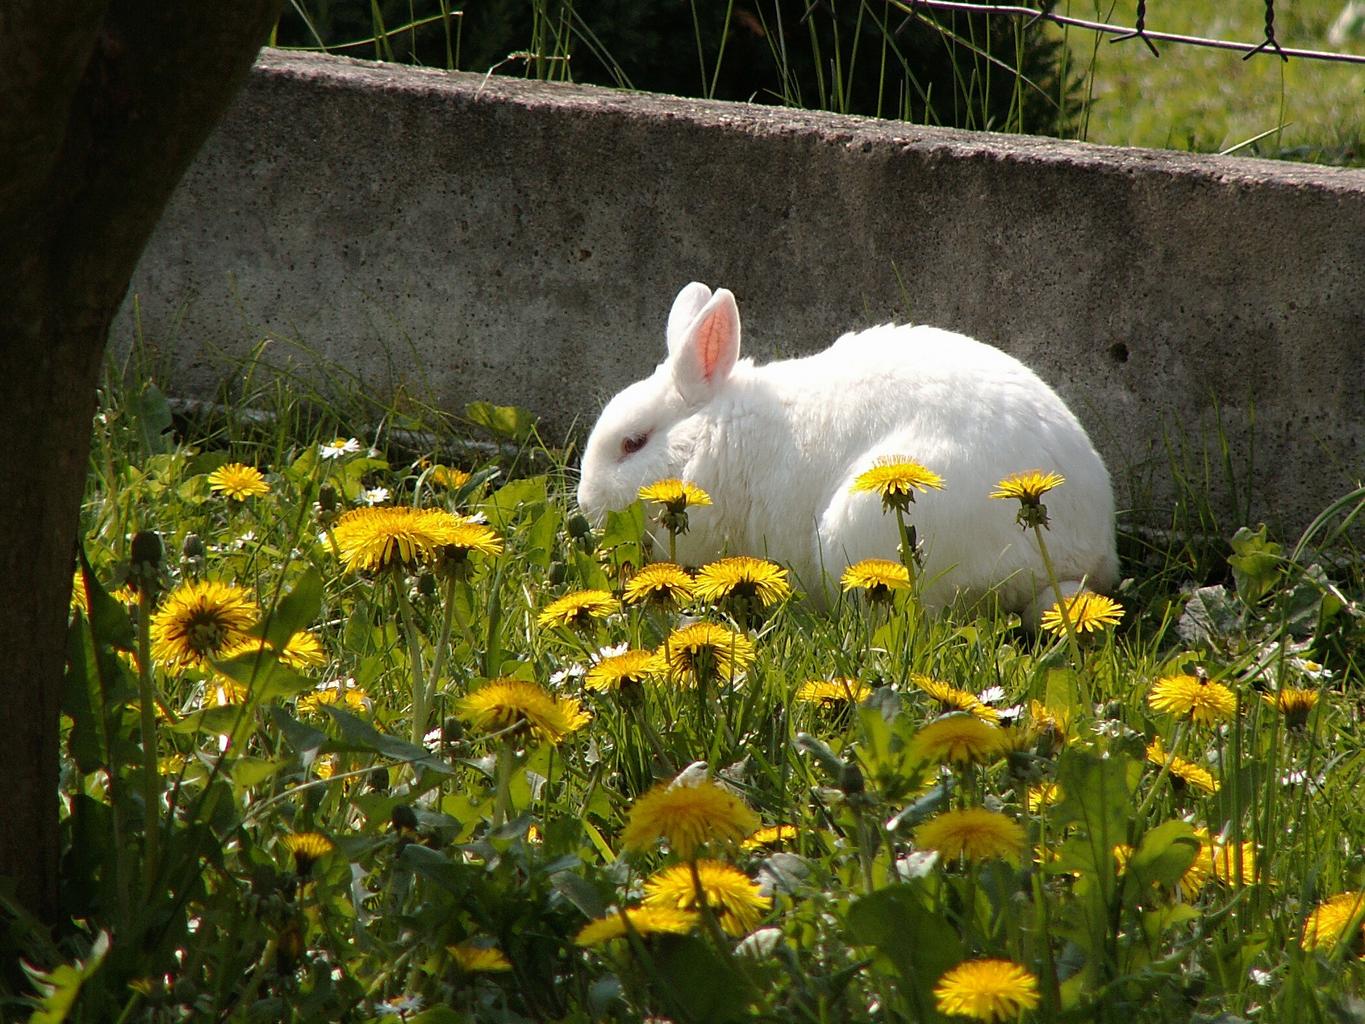 White bunny rabbit eating dandelion greens